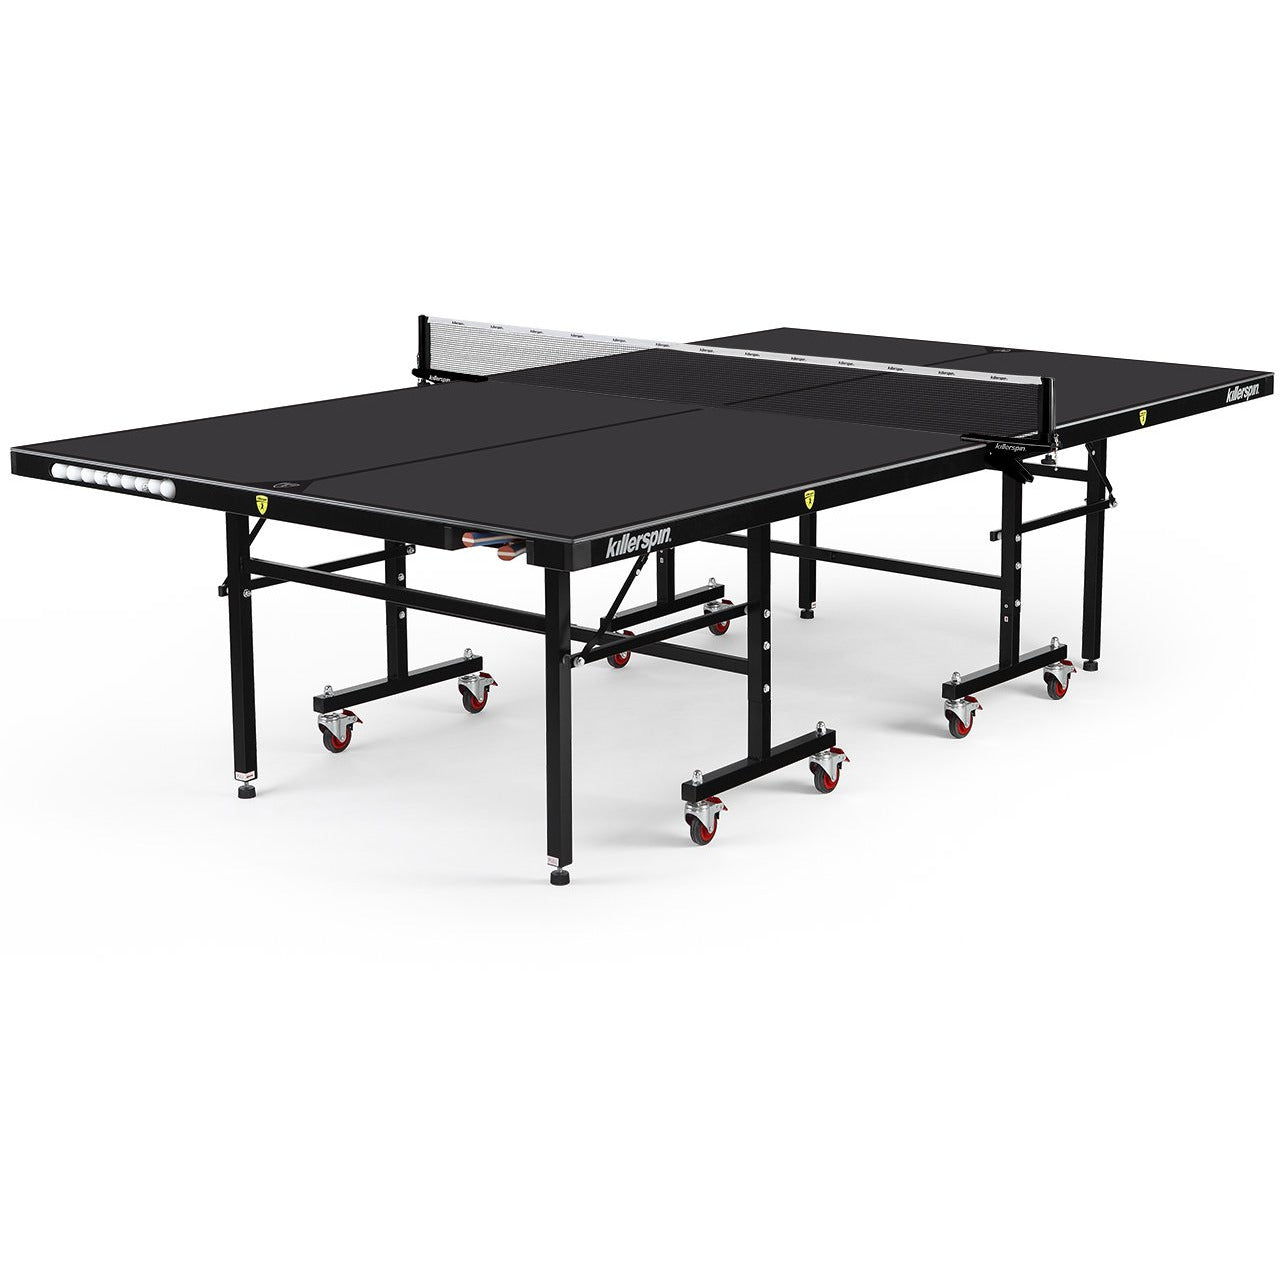 Killerspin Myt10 Blackstorm Outdoor Ping Pong Table